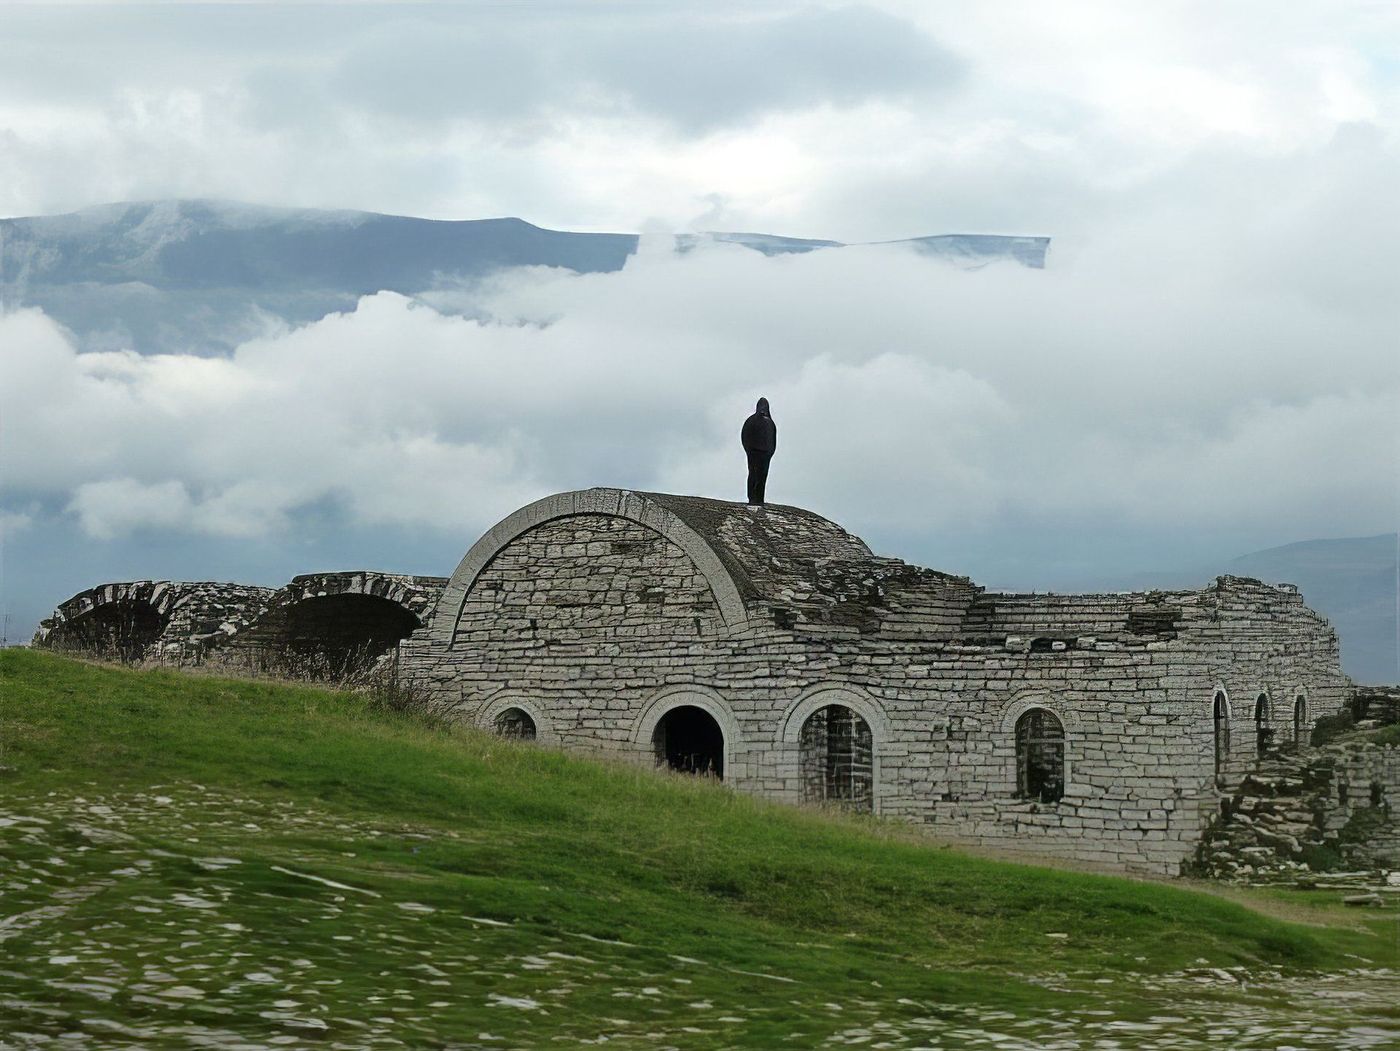 La citadelle de Berat